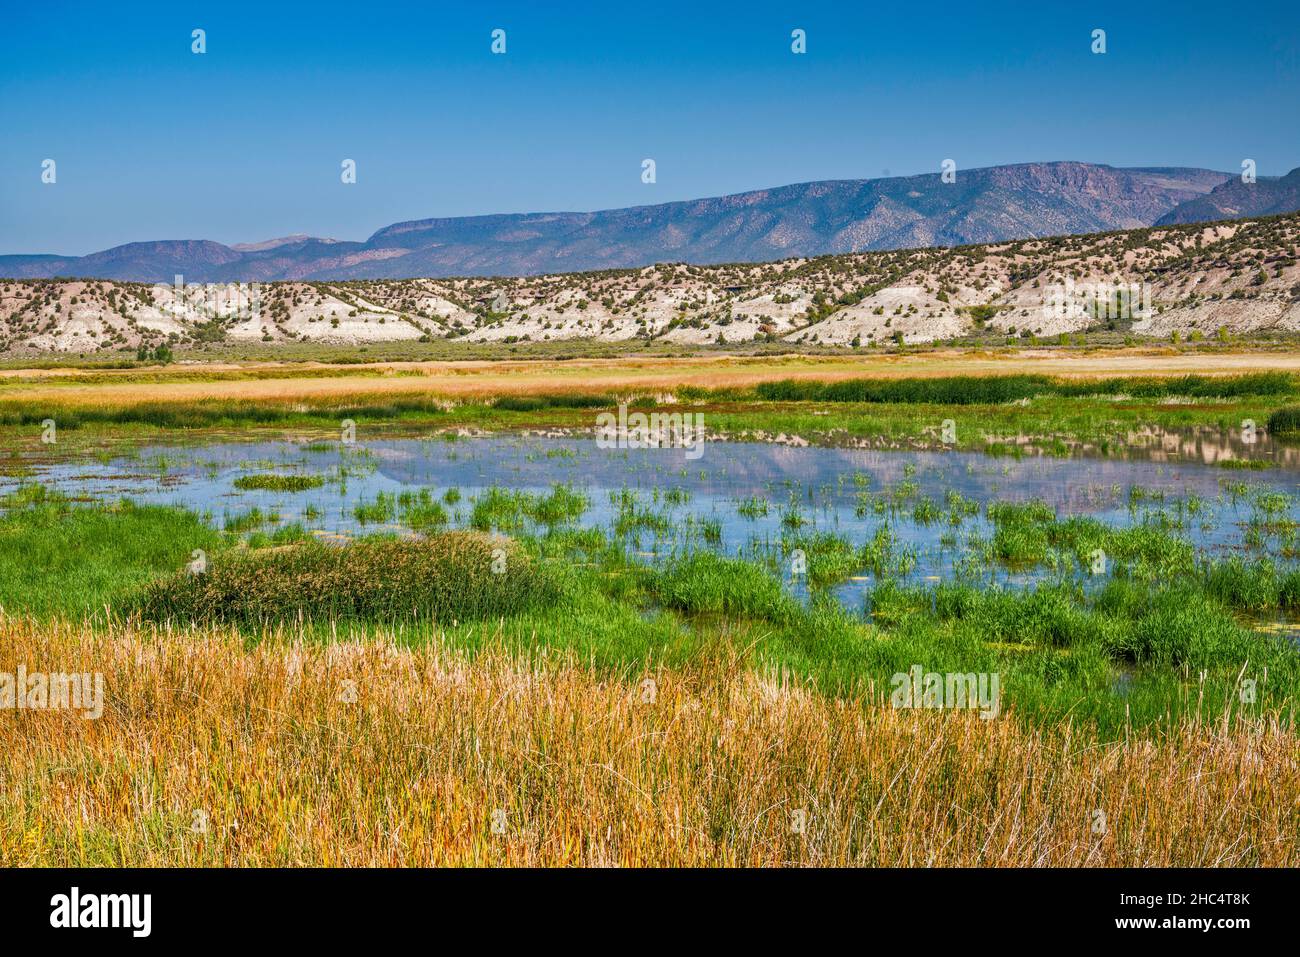 Zone de la sauvagine de Browns Park, zone de débordement de Green River, marais d'eau douce, montagnes O-Wi-Yu-Kuts à distance, Utah, États-Unis Banque D'Images